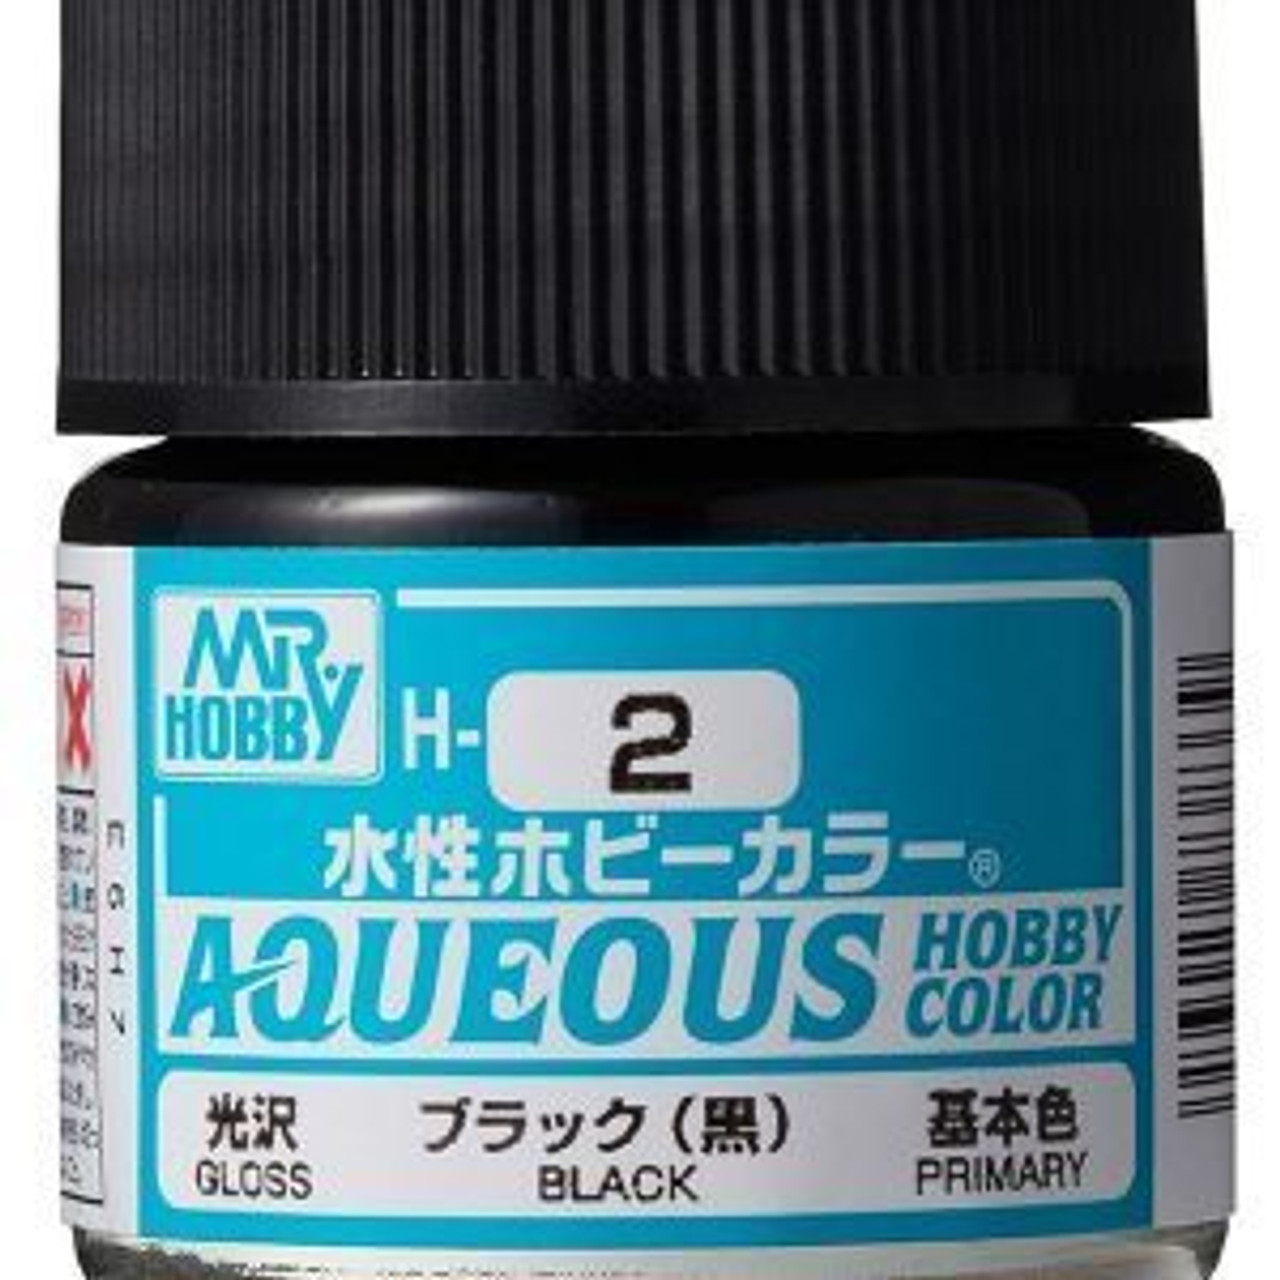 GNZH2  Gloss Black 10ml Bottle   GSI Aqueous Color